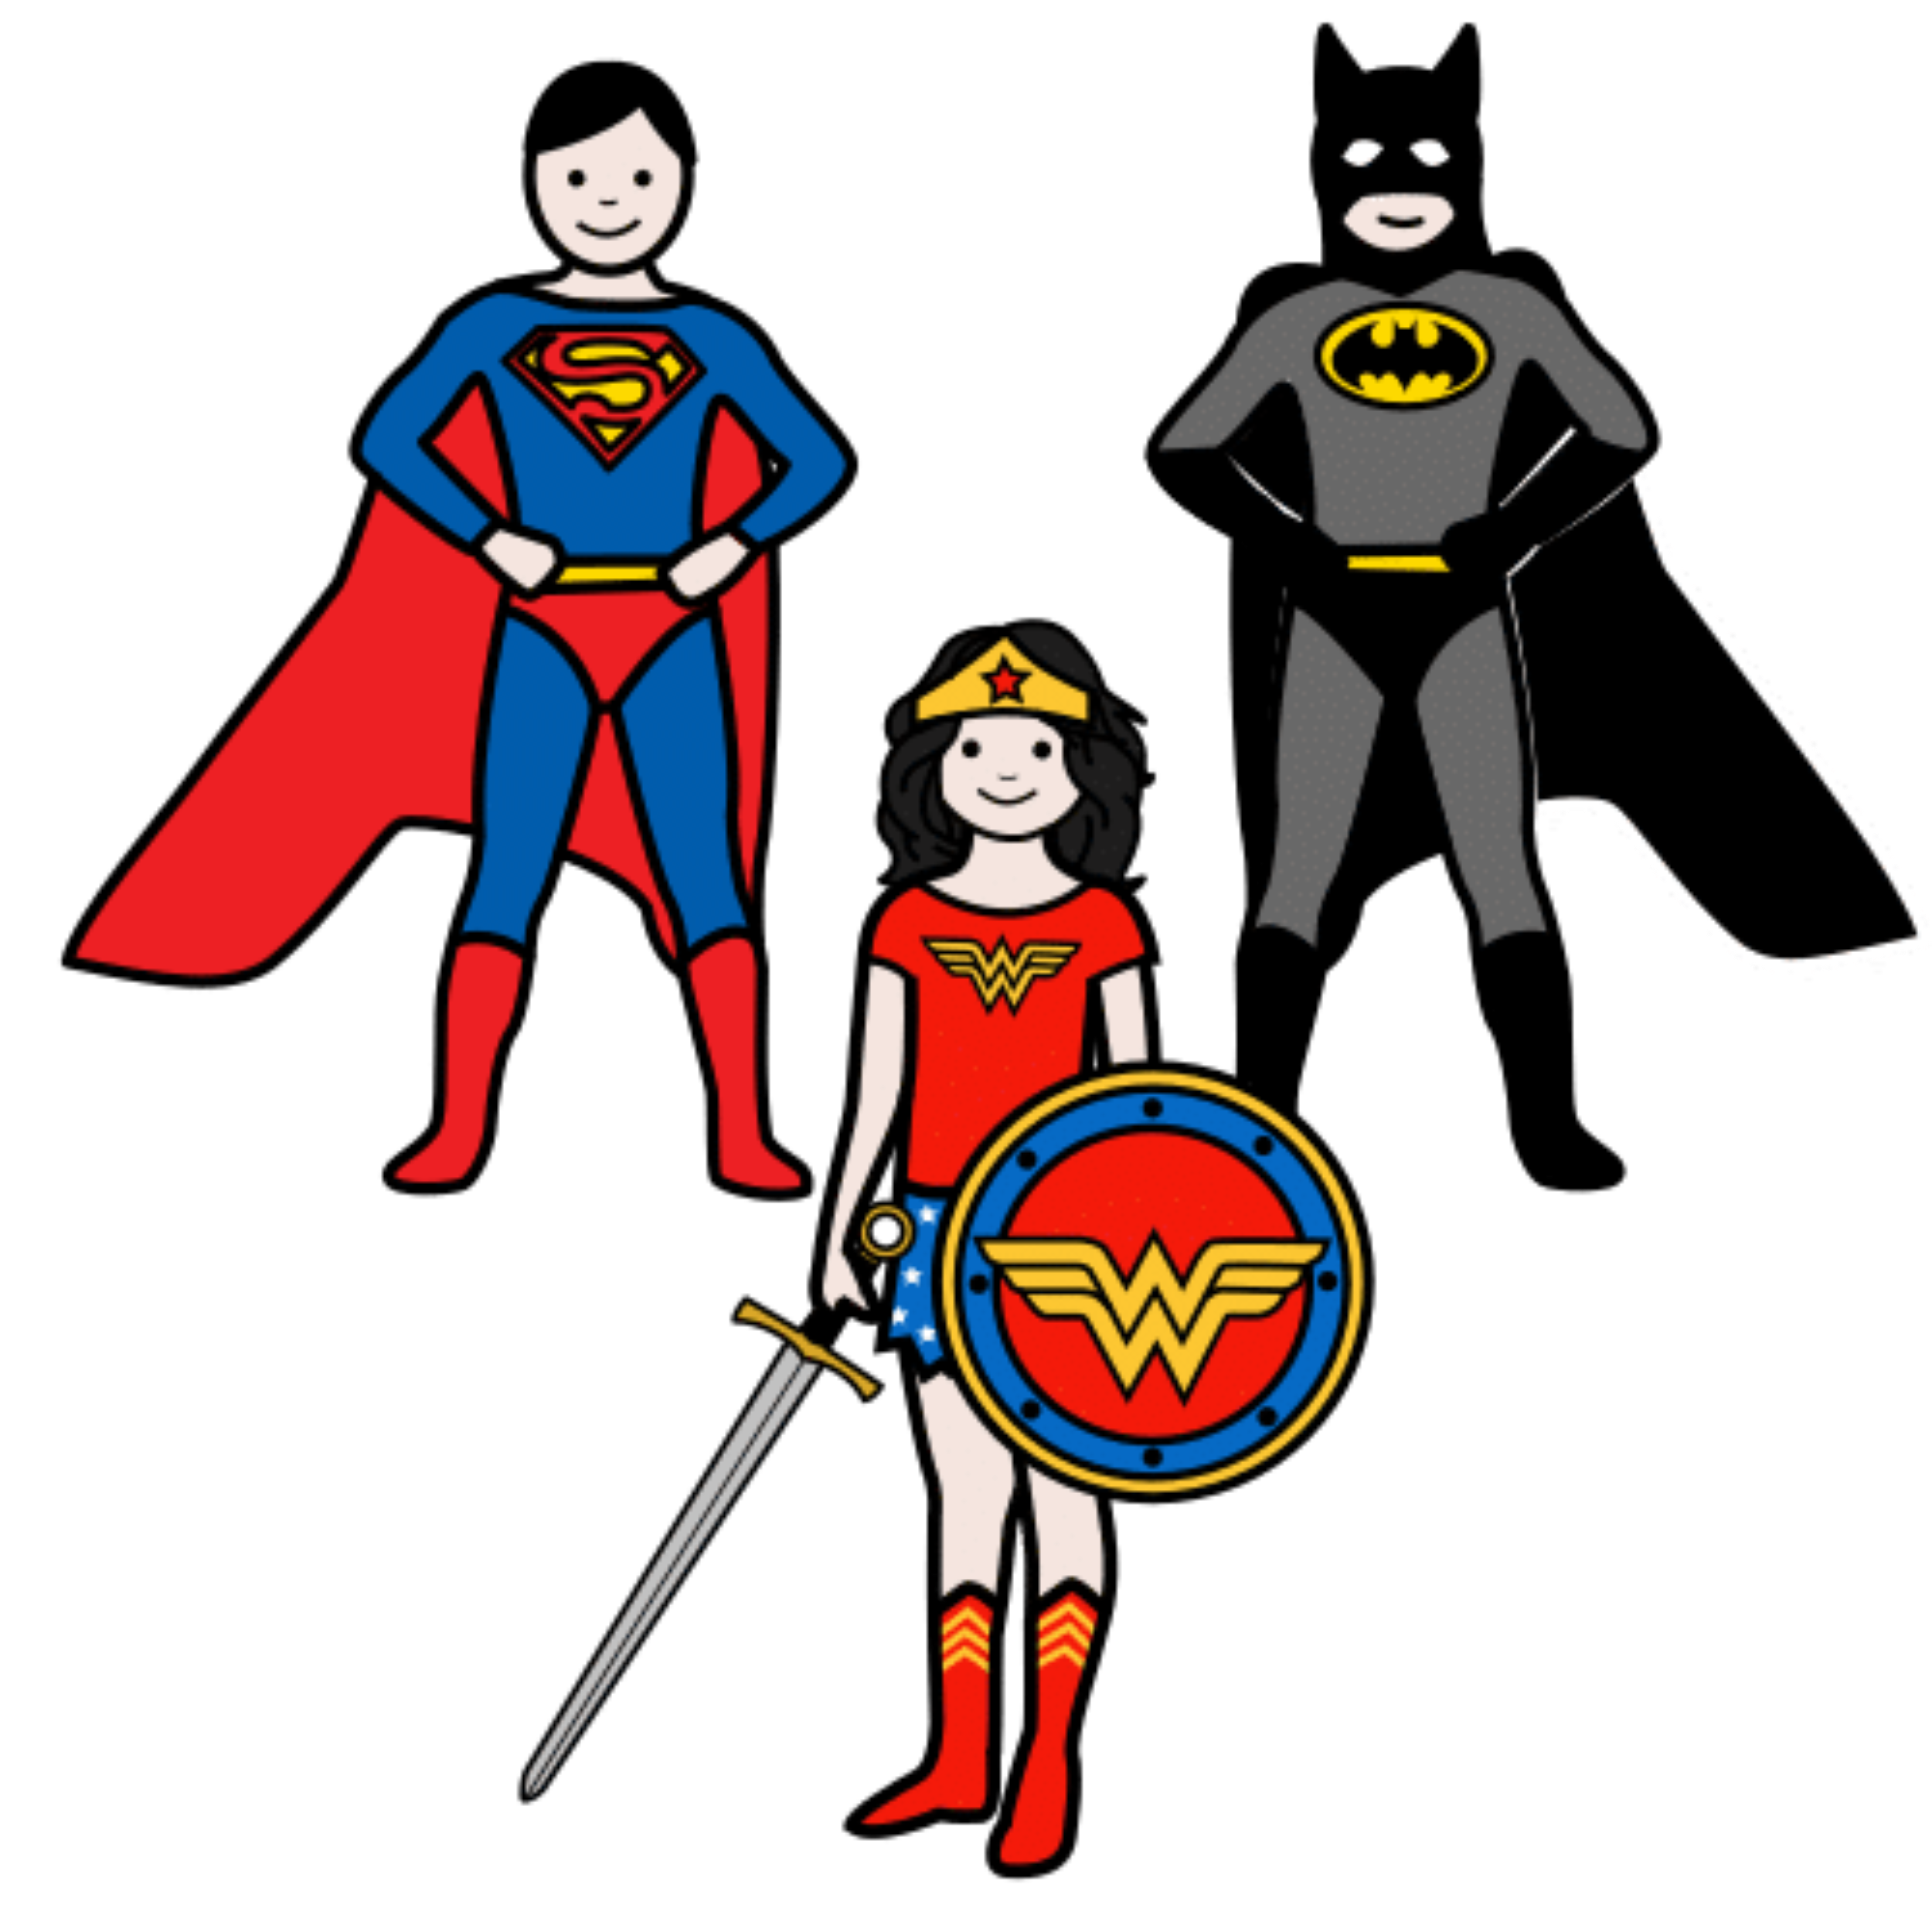 Imagen de 3 superhéroes. Batman, Superman y Wonder Woman.